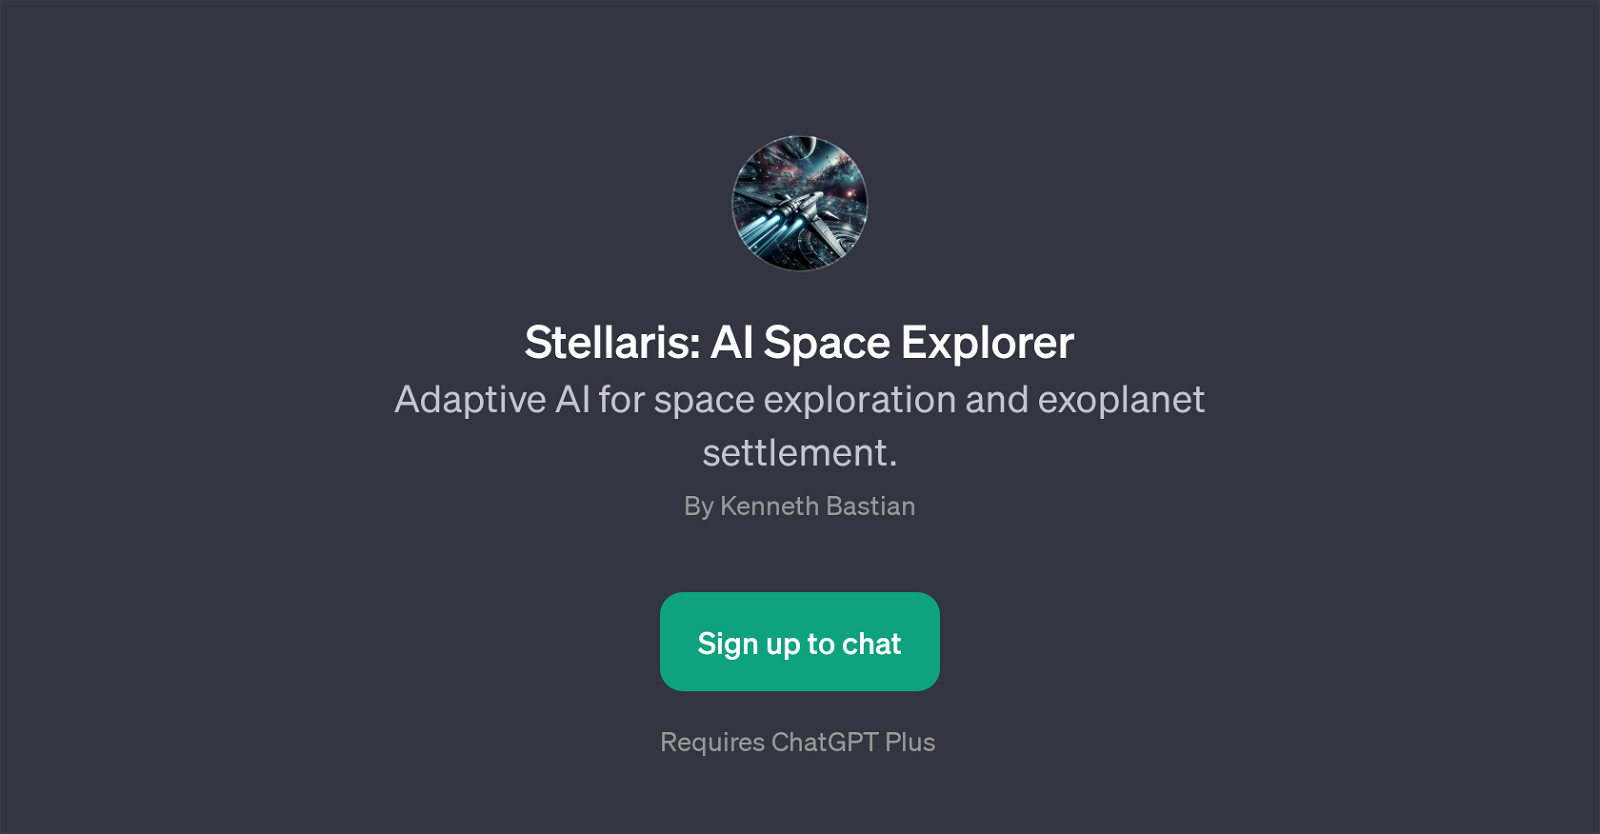 Stellaris: AI Space Explorer website